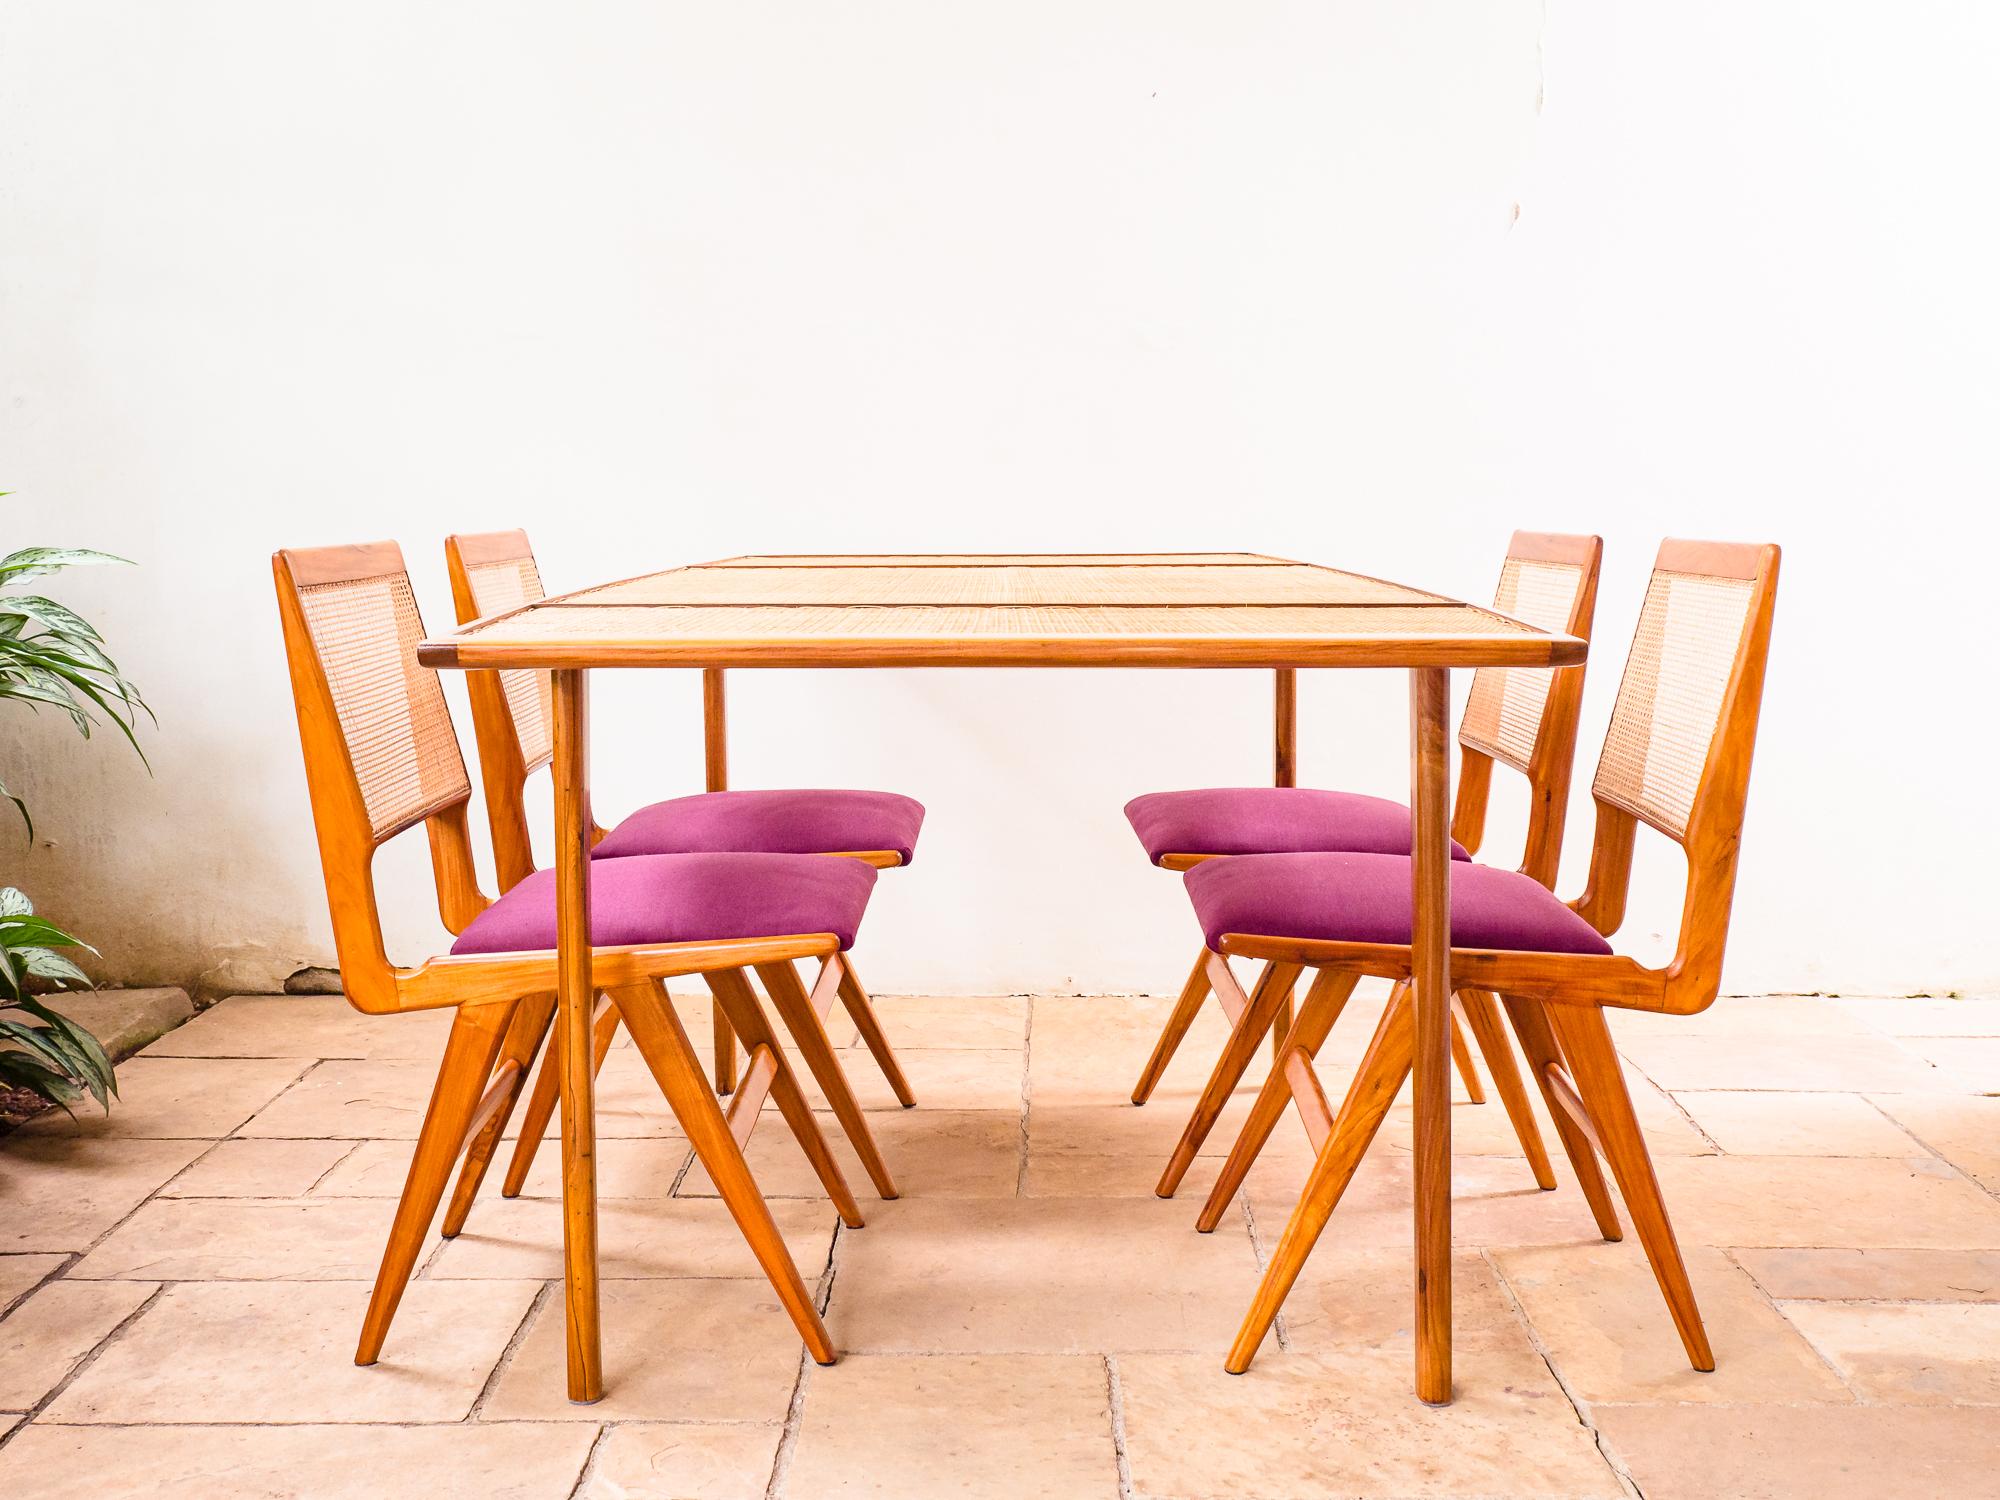 Il s'agit de la rare et extrêmement recherchée table à manger avec plateau en rotin, créée par le designer austro-brésilien Martin Eisler au début ou au milieu des années 1950.

Eisler a été séduit par la simplicité et les résultats de